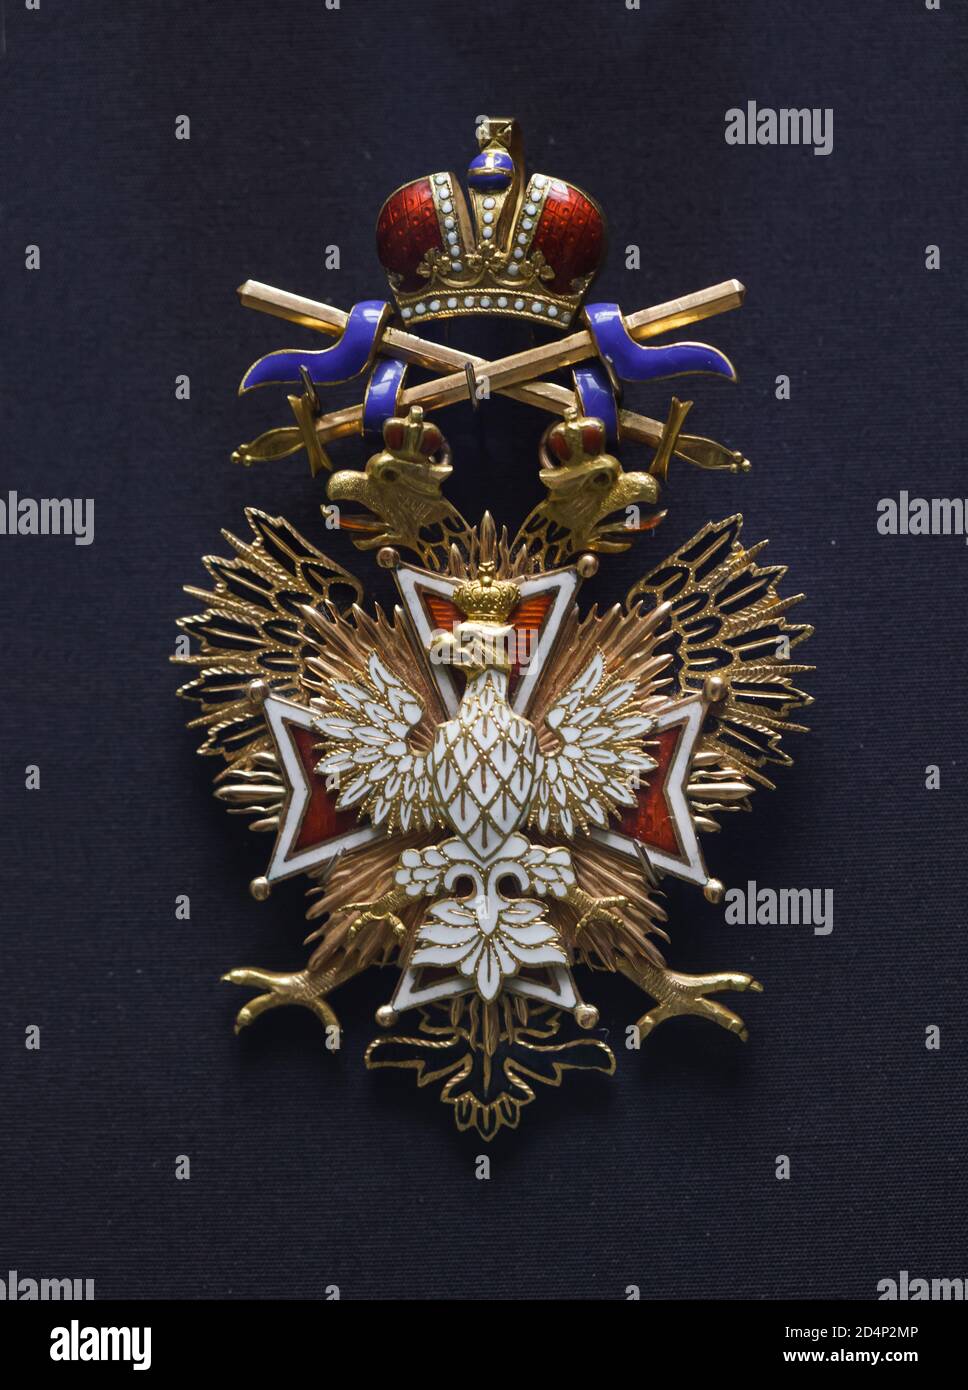 Das Abzeichen des russischen Kaiserlichen Ordens des Weißen Adlers mit Schwertern ist im Nationalmuseum (Národní Muzeum) in Prag, Tschechische Republik ausgestellt. Der russische General Aleksei Brusilov erhielt diesen Auftrag am 10. Januar 1915 während des Ersten Weltkriegs. Stockfoto